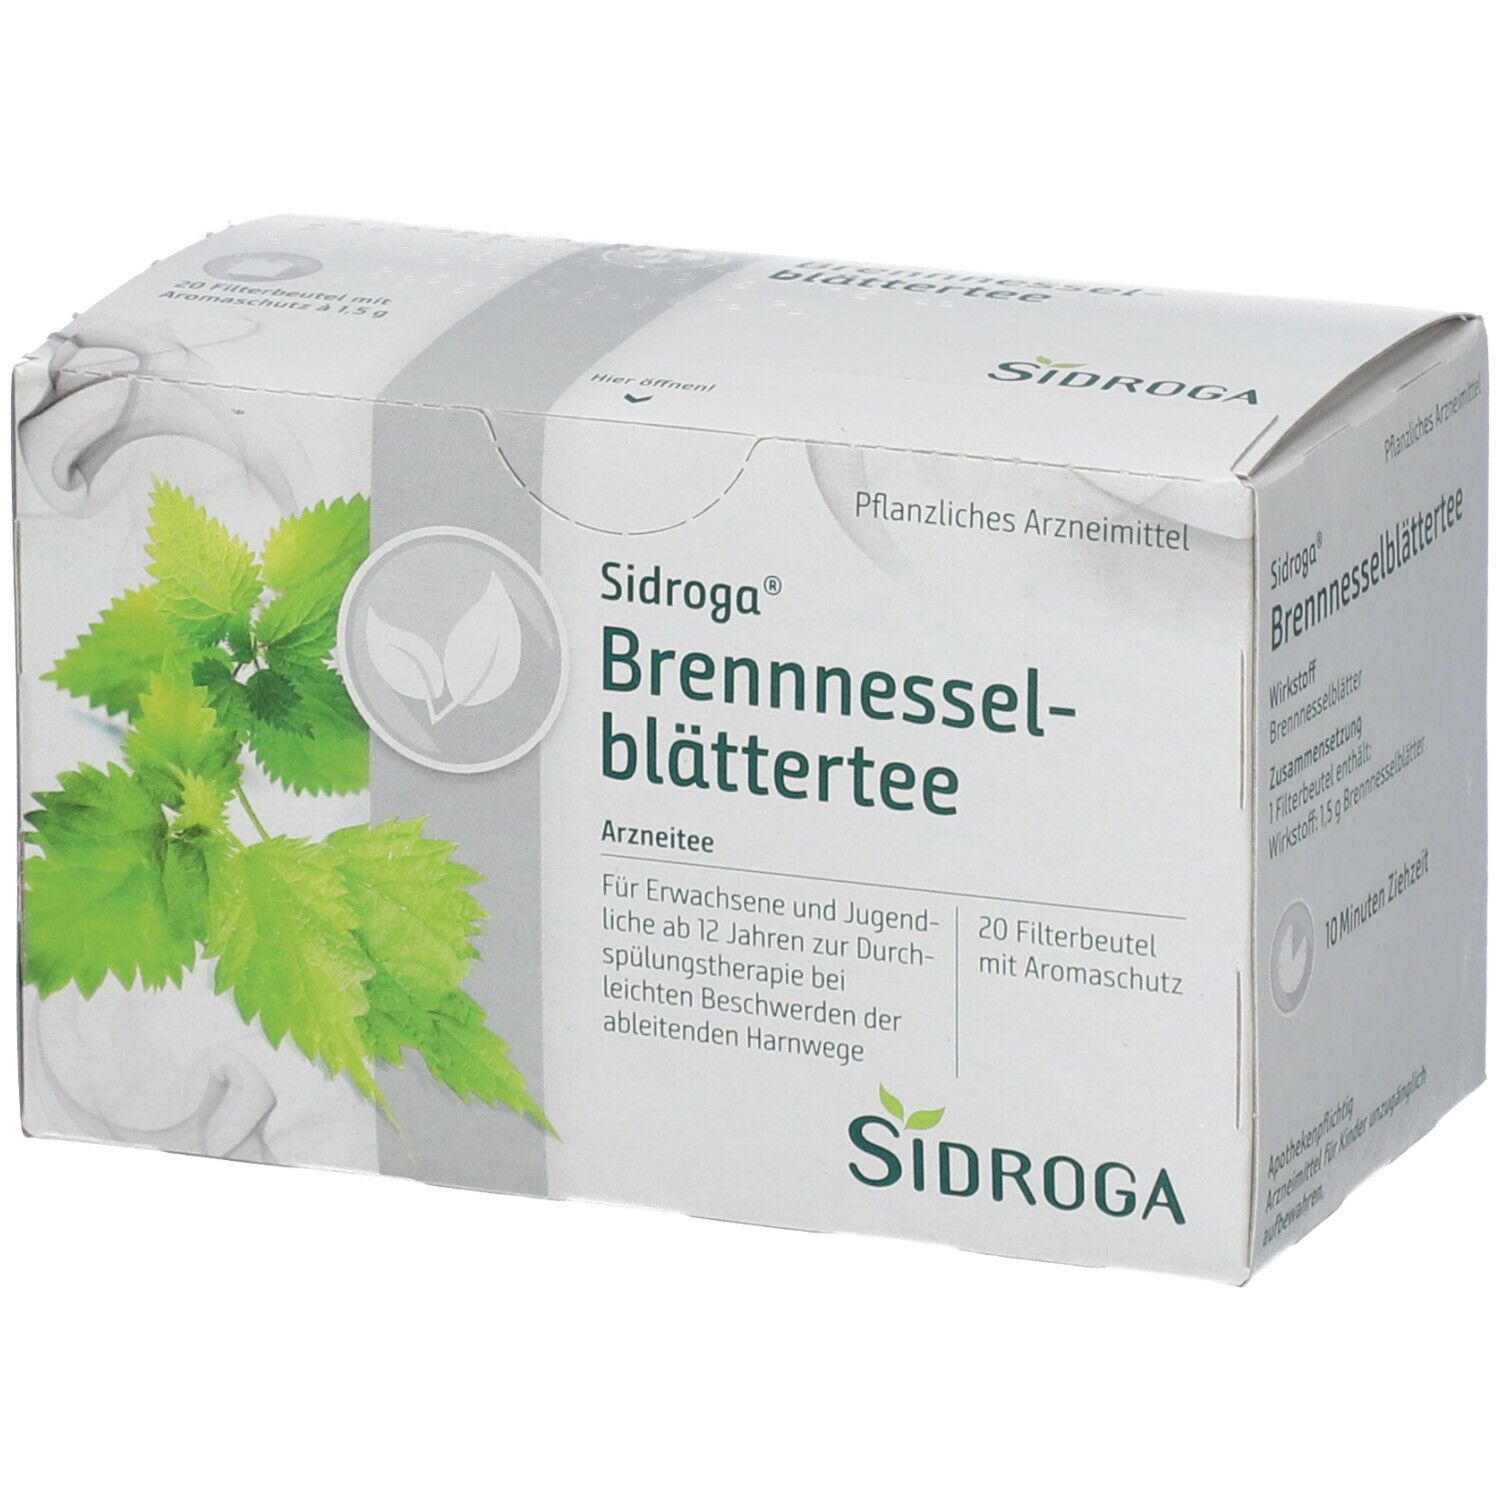 Sidroga® Brennnesselblättertee